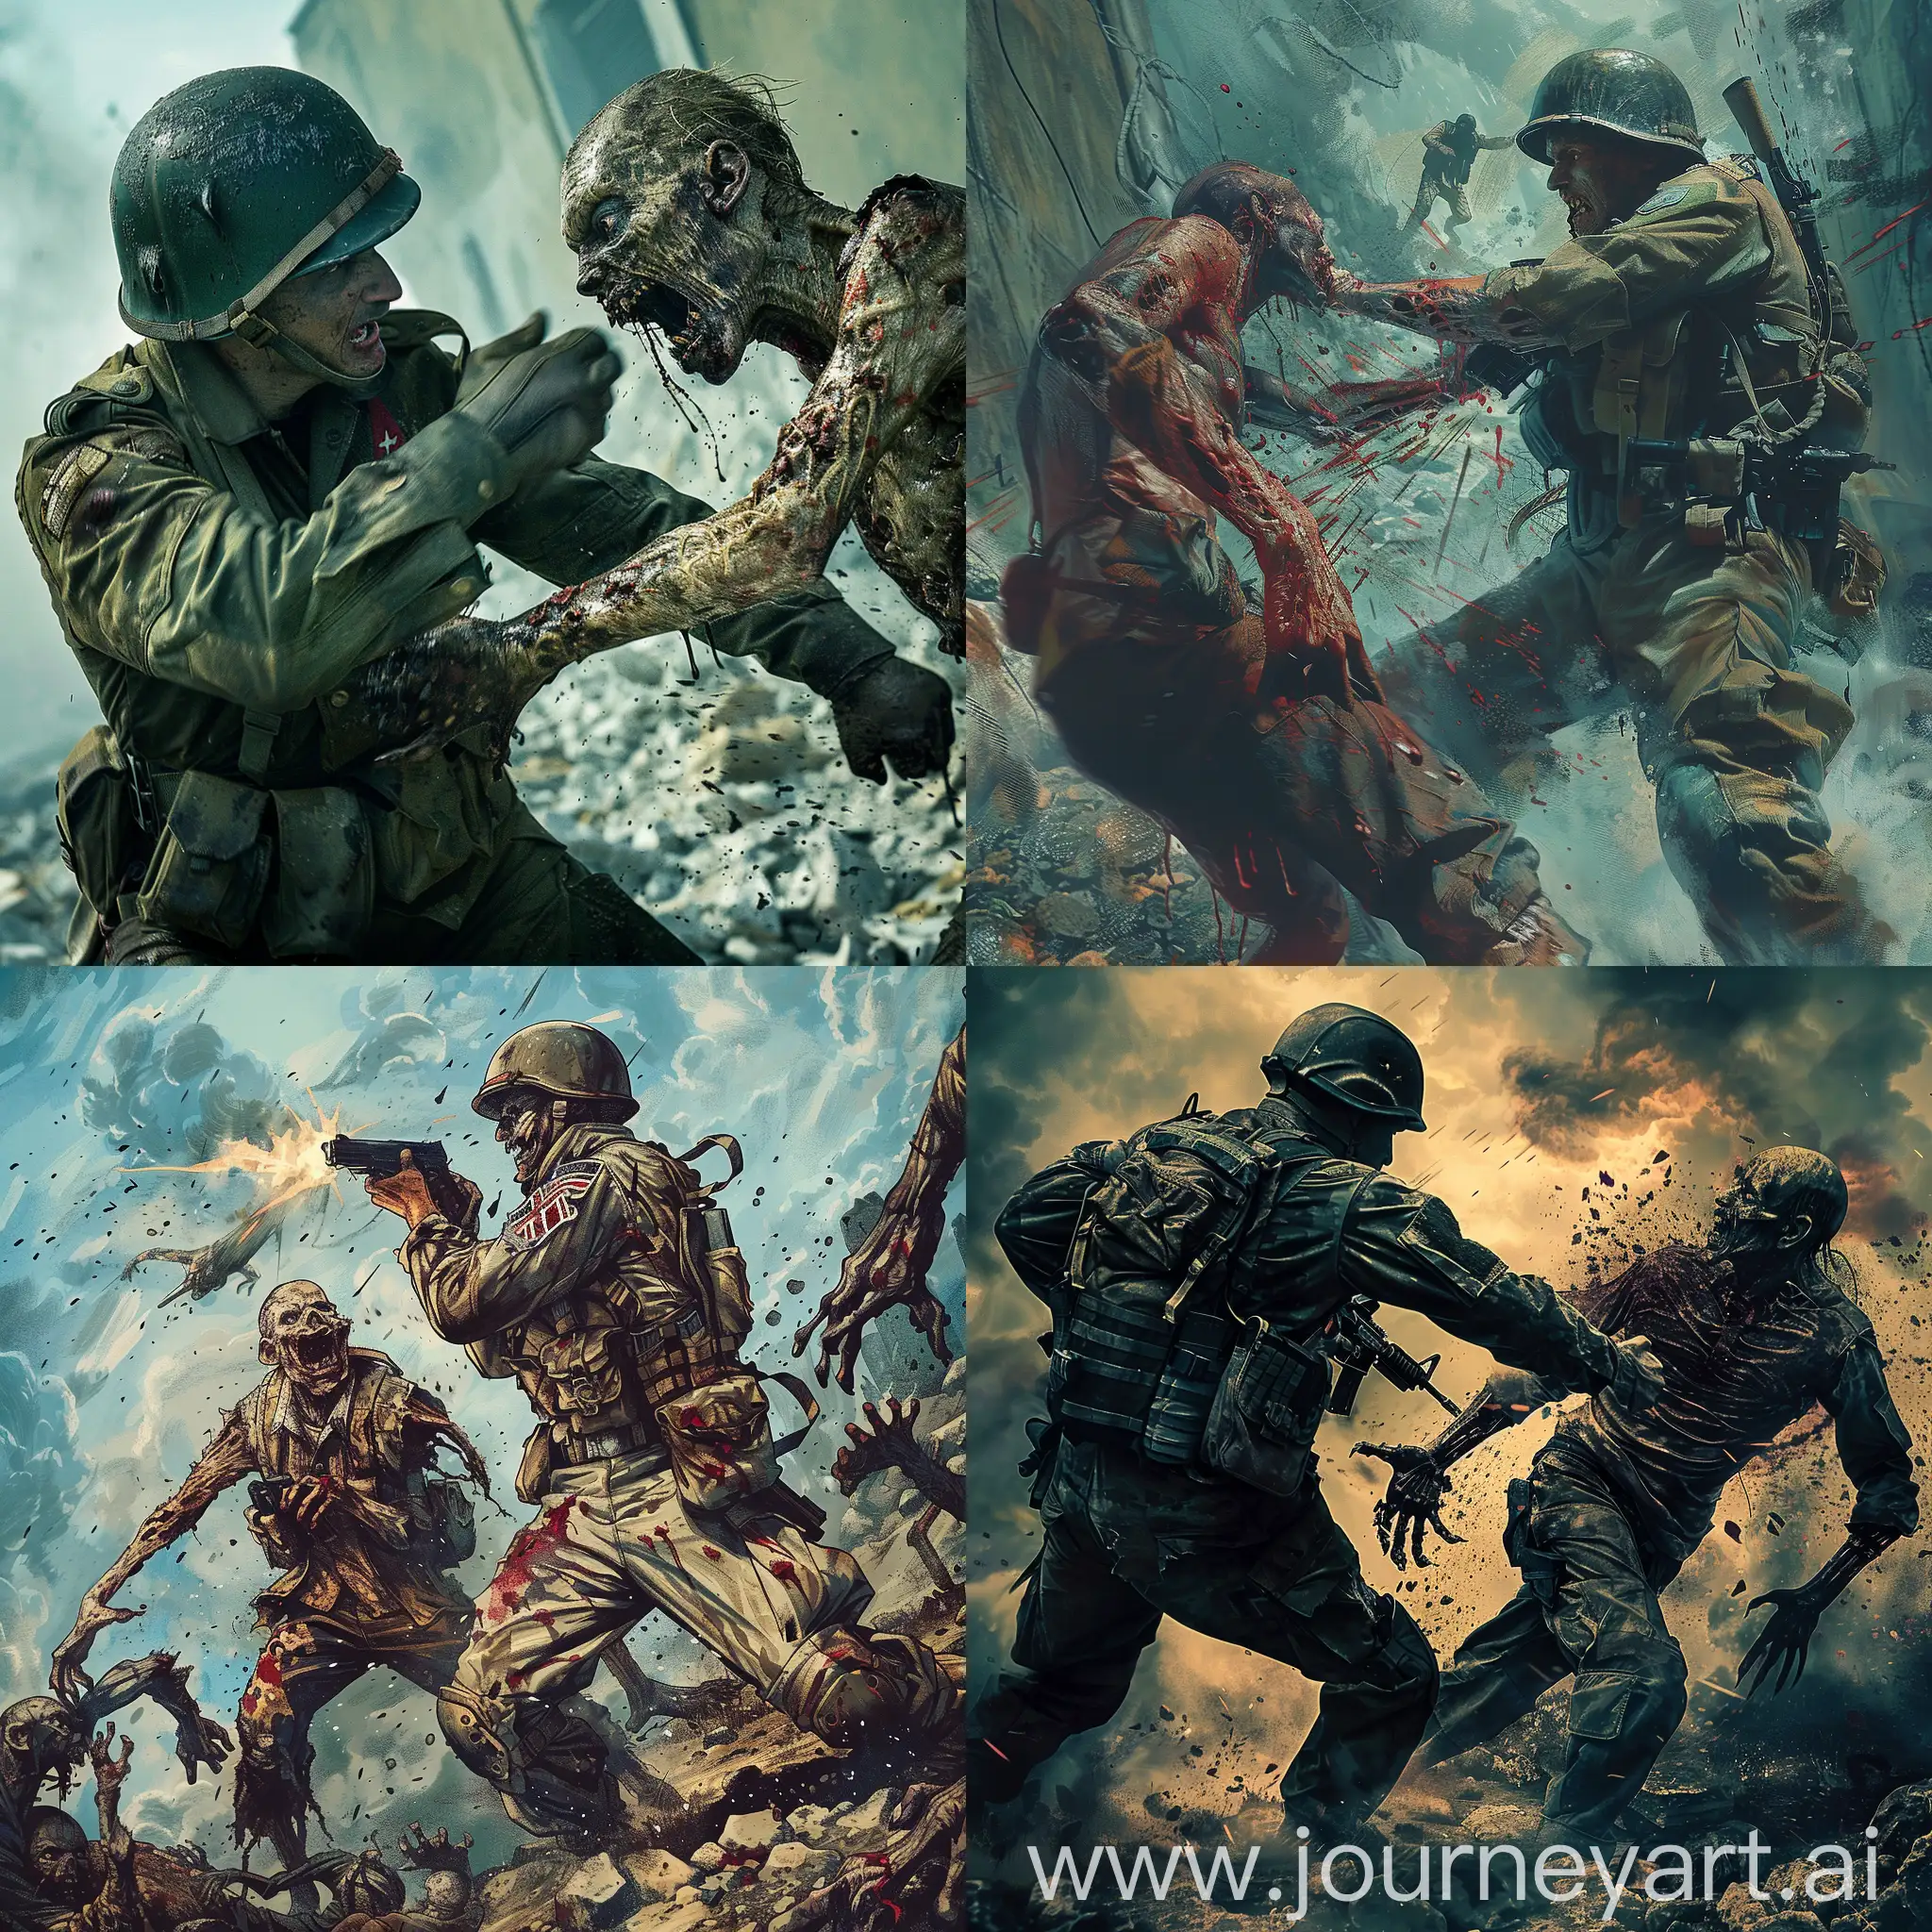 Brave-Soldier-Battling-a-Fierce-Zombie-in-Intense-Combat